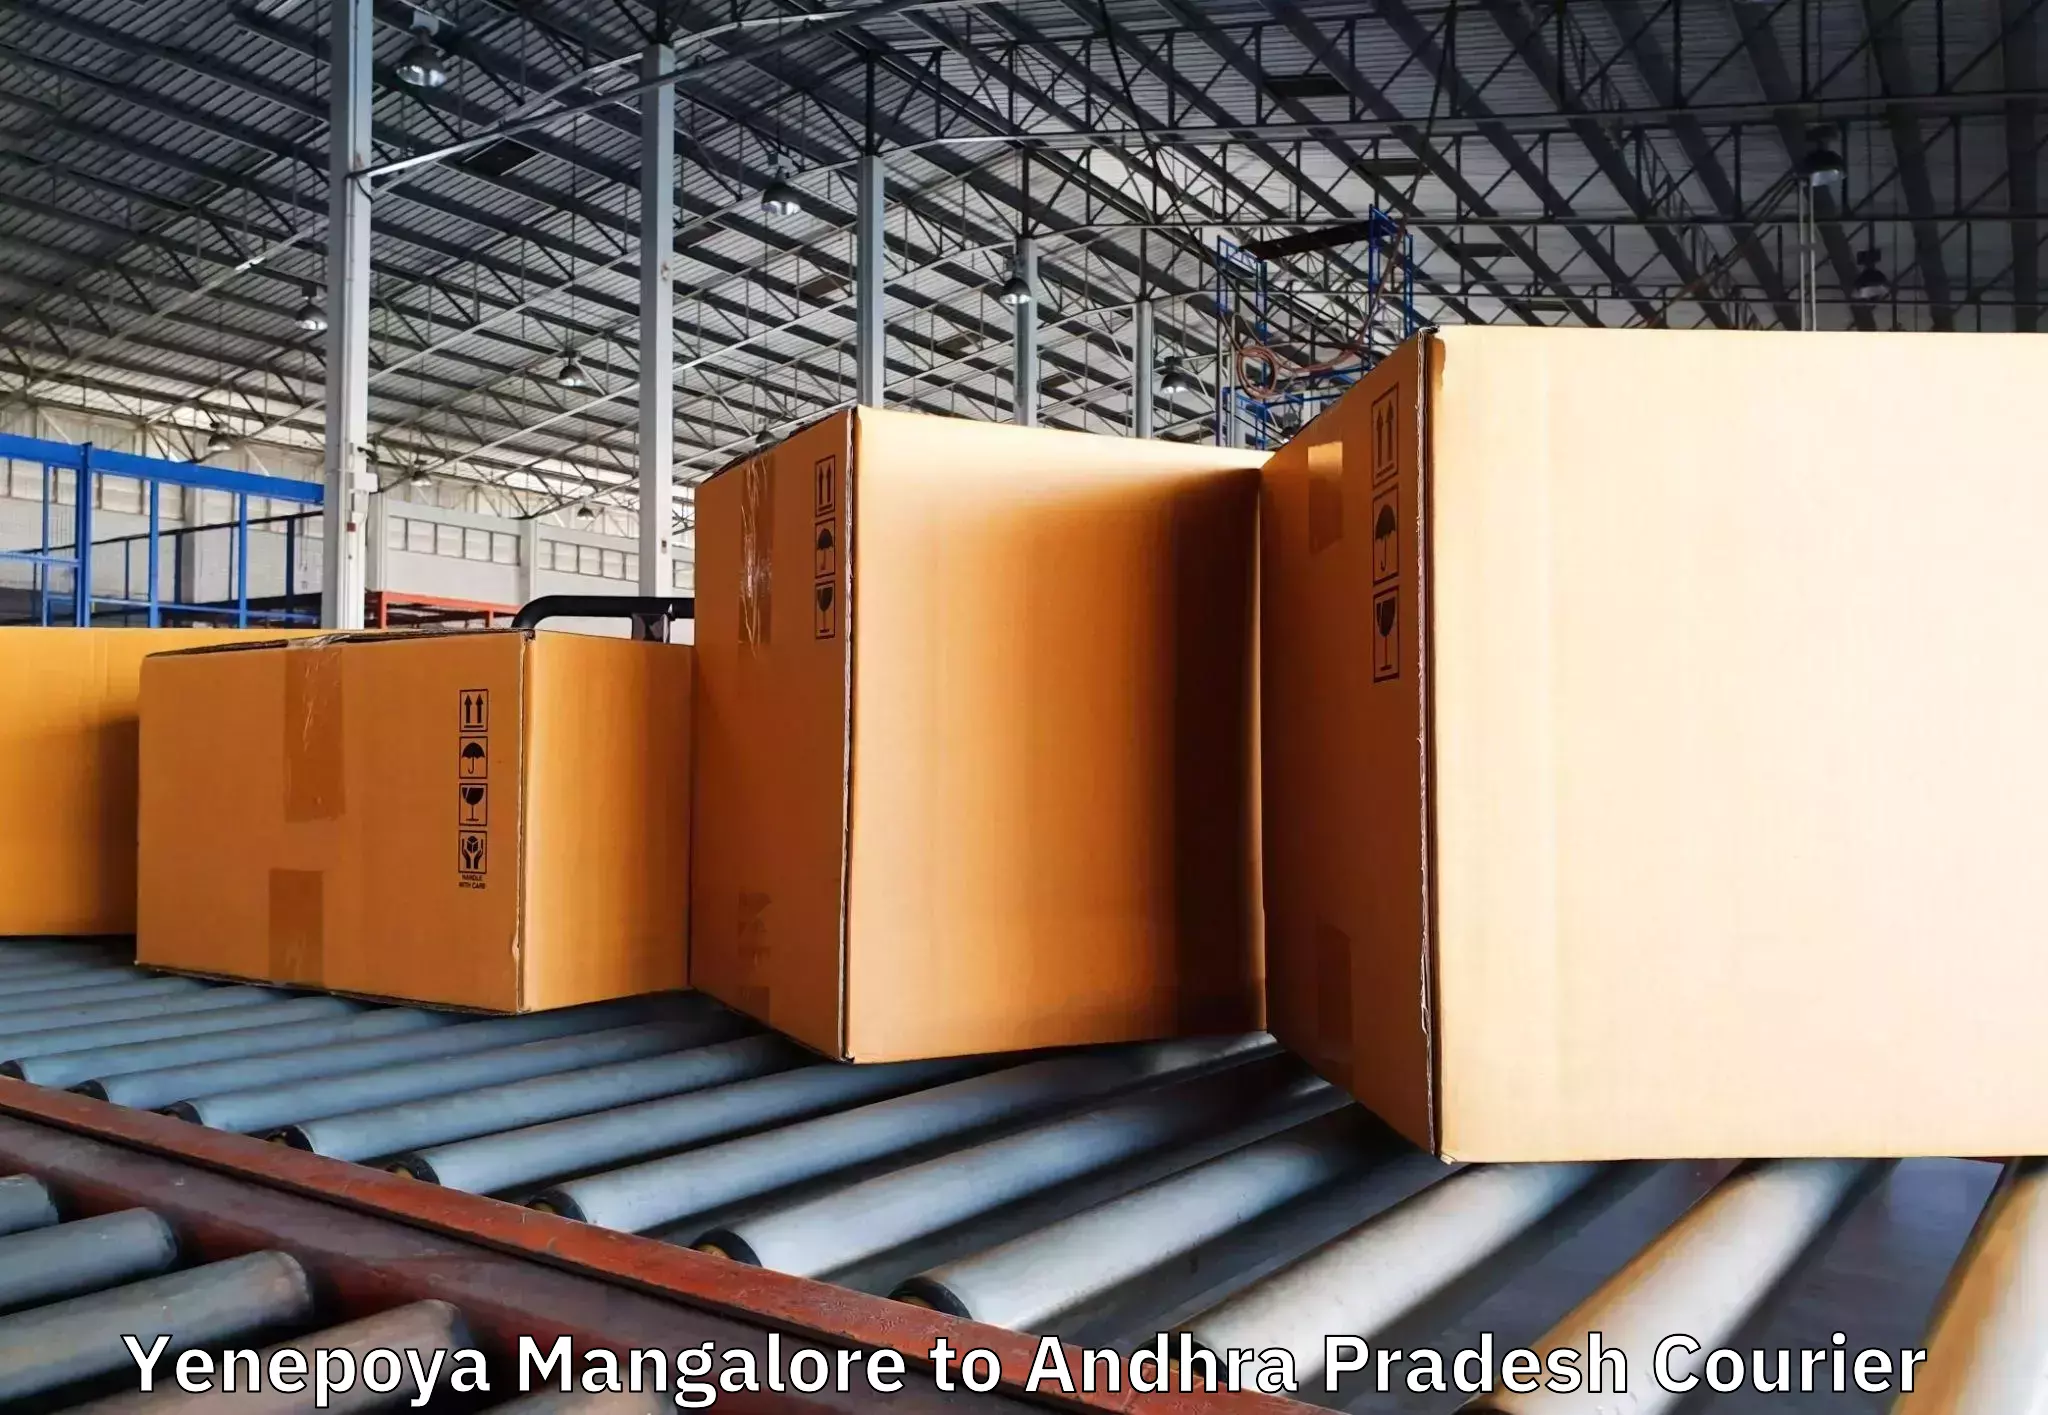 Home relocation experts Yenepoya Mangalore to Andhra Pradesh